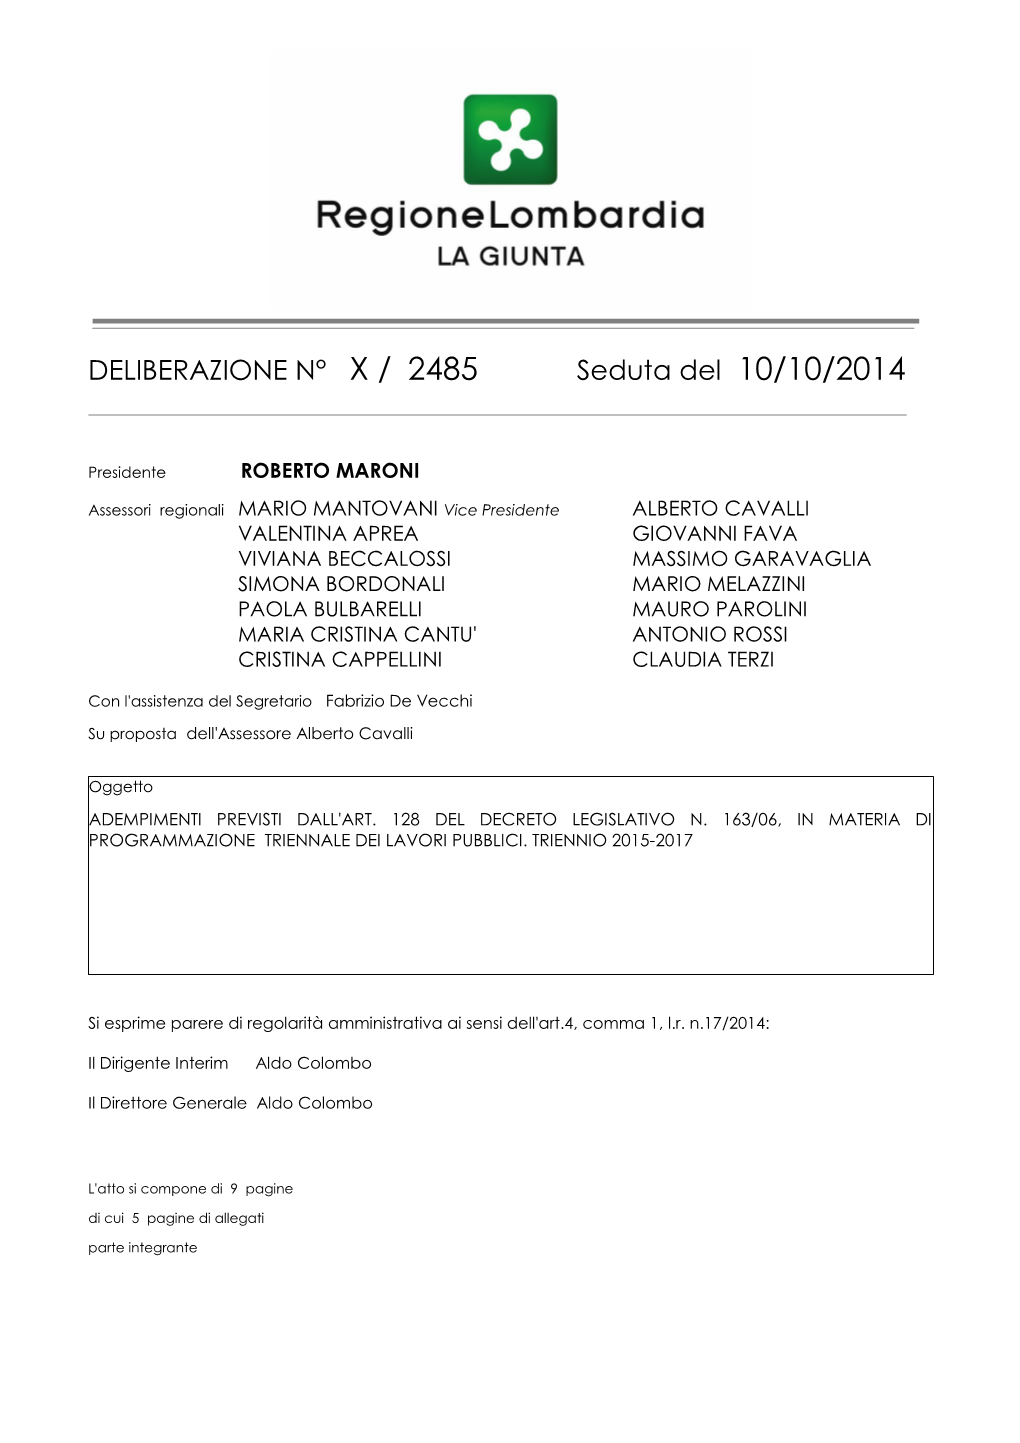 DELIBERAZIONE N° X / 2485 Seduta Del 10/10/2014